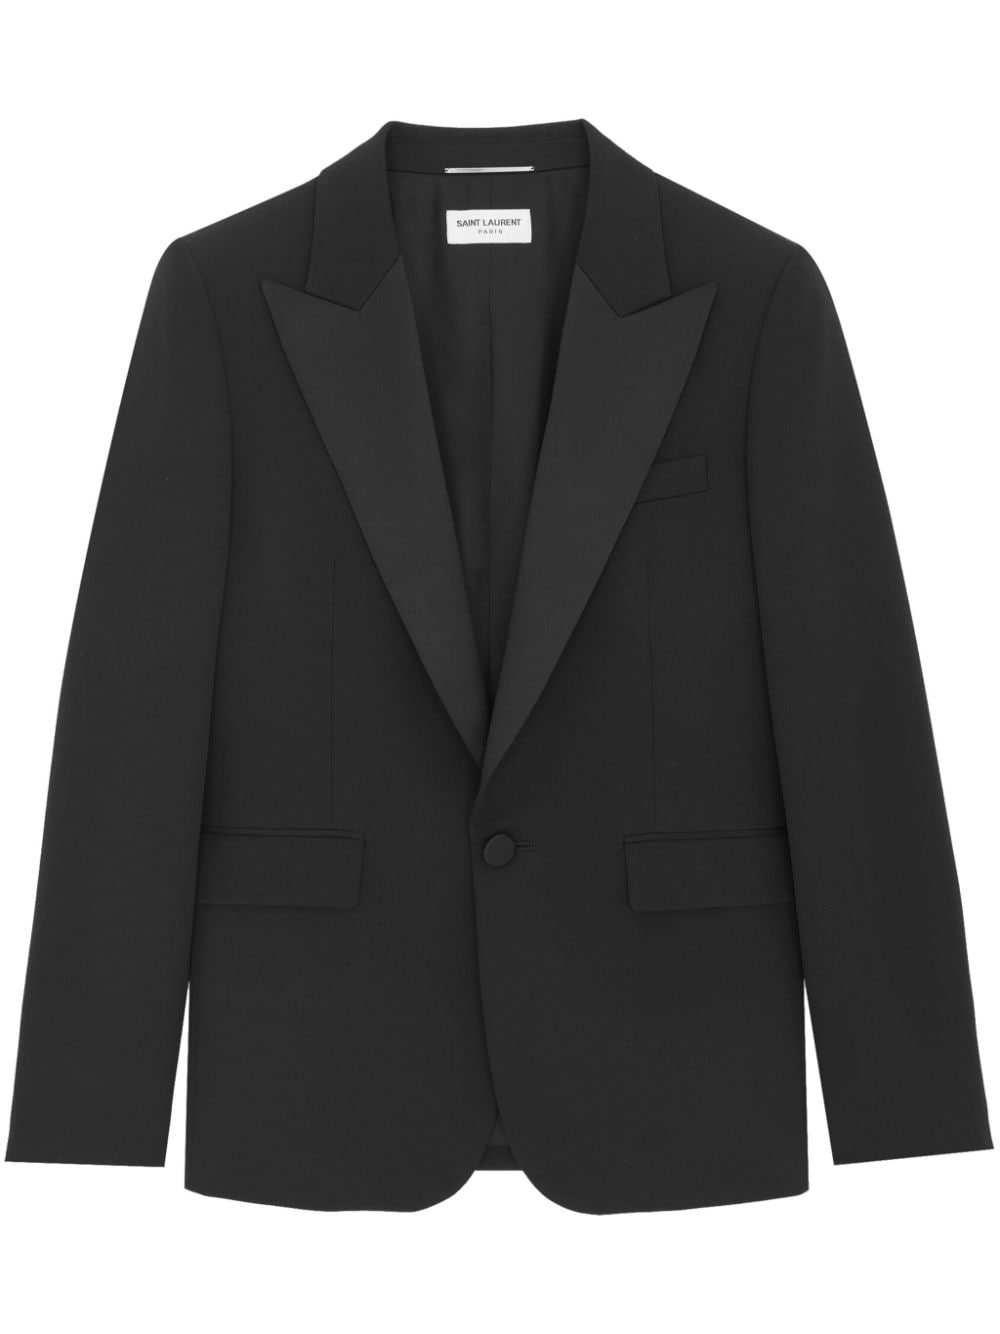 SAINT LAURENT Black Button Tuxedo Jacket for Men - SS24 Collection